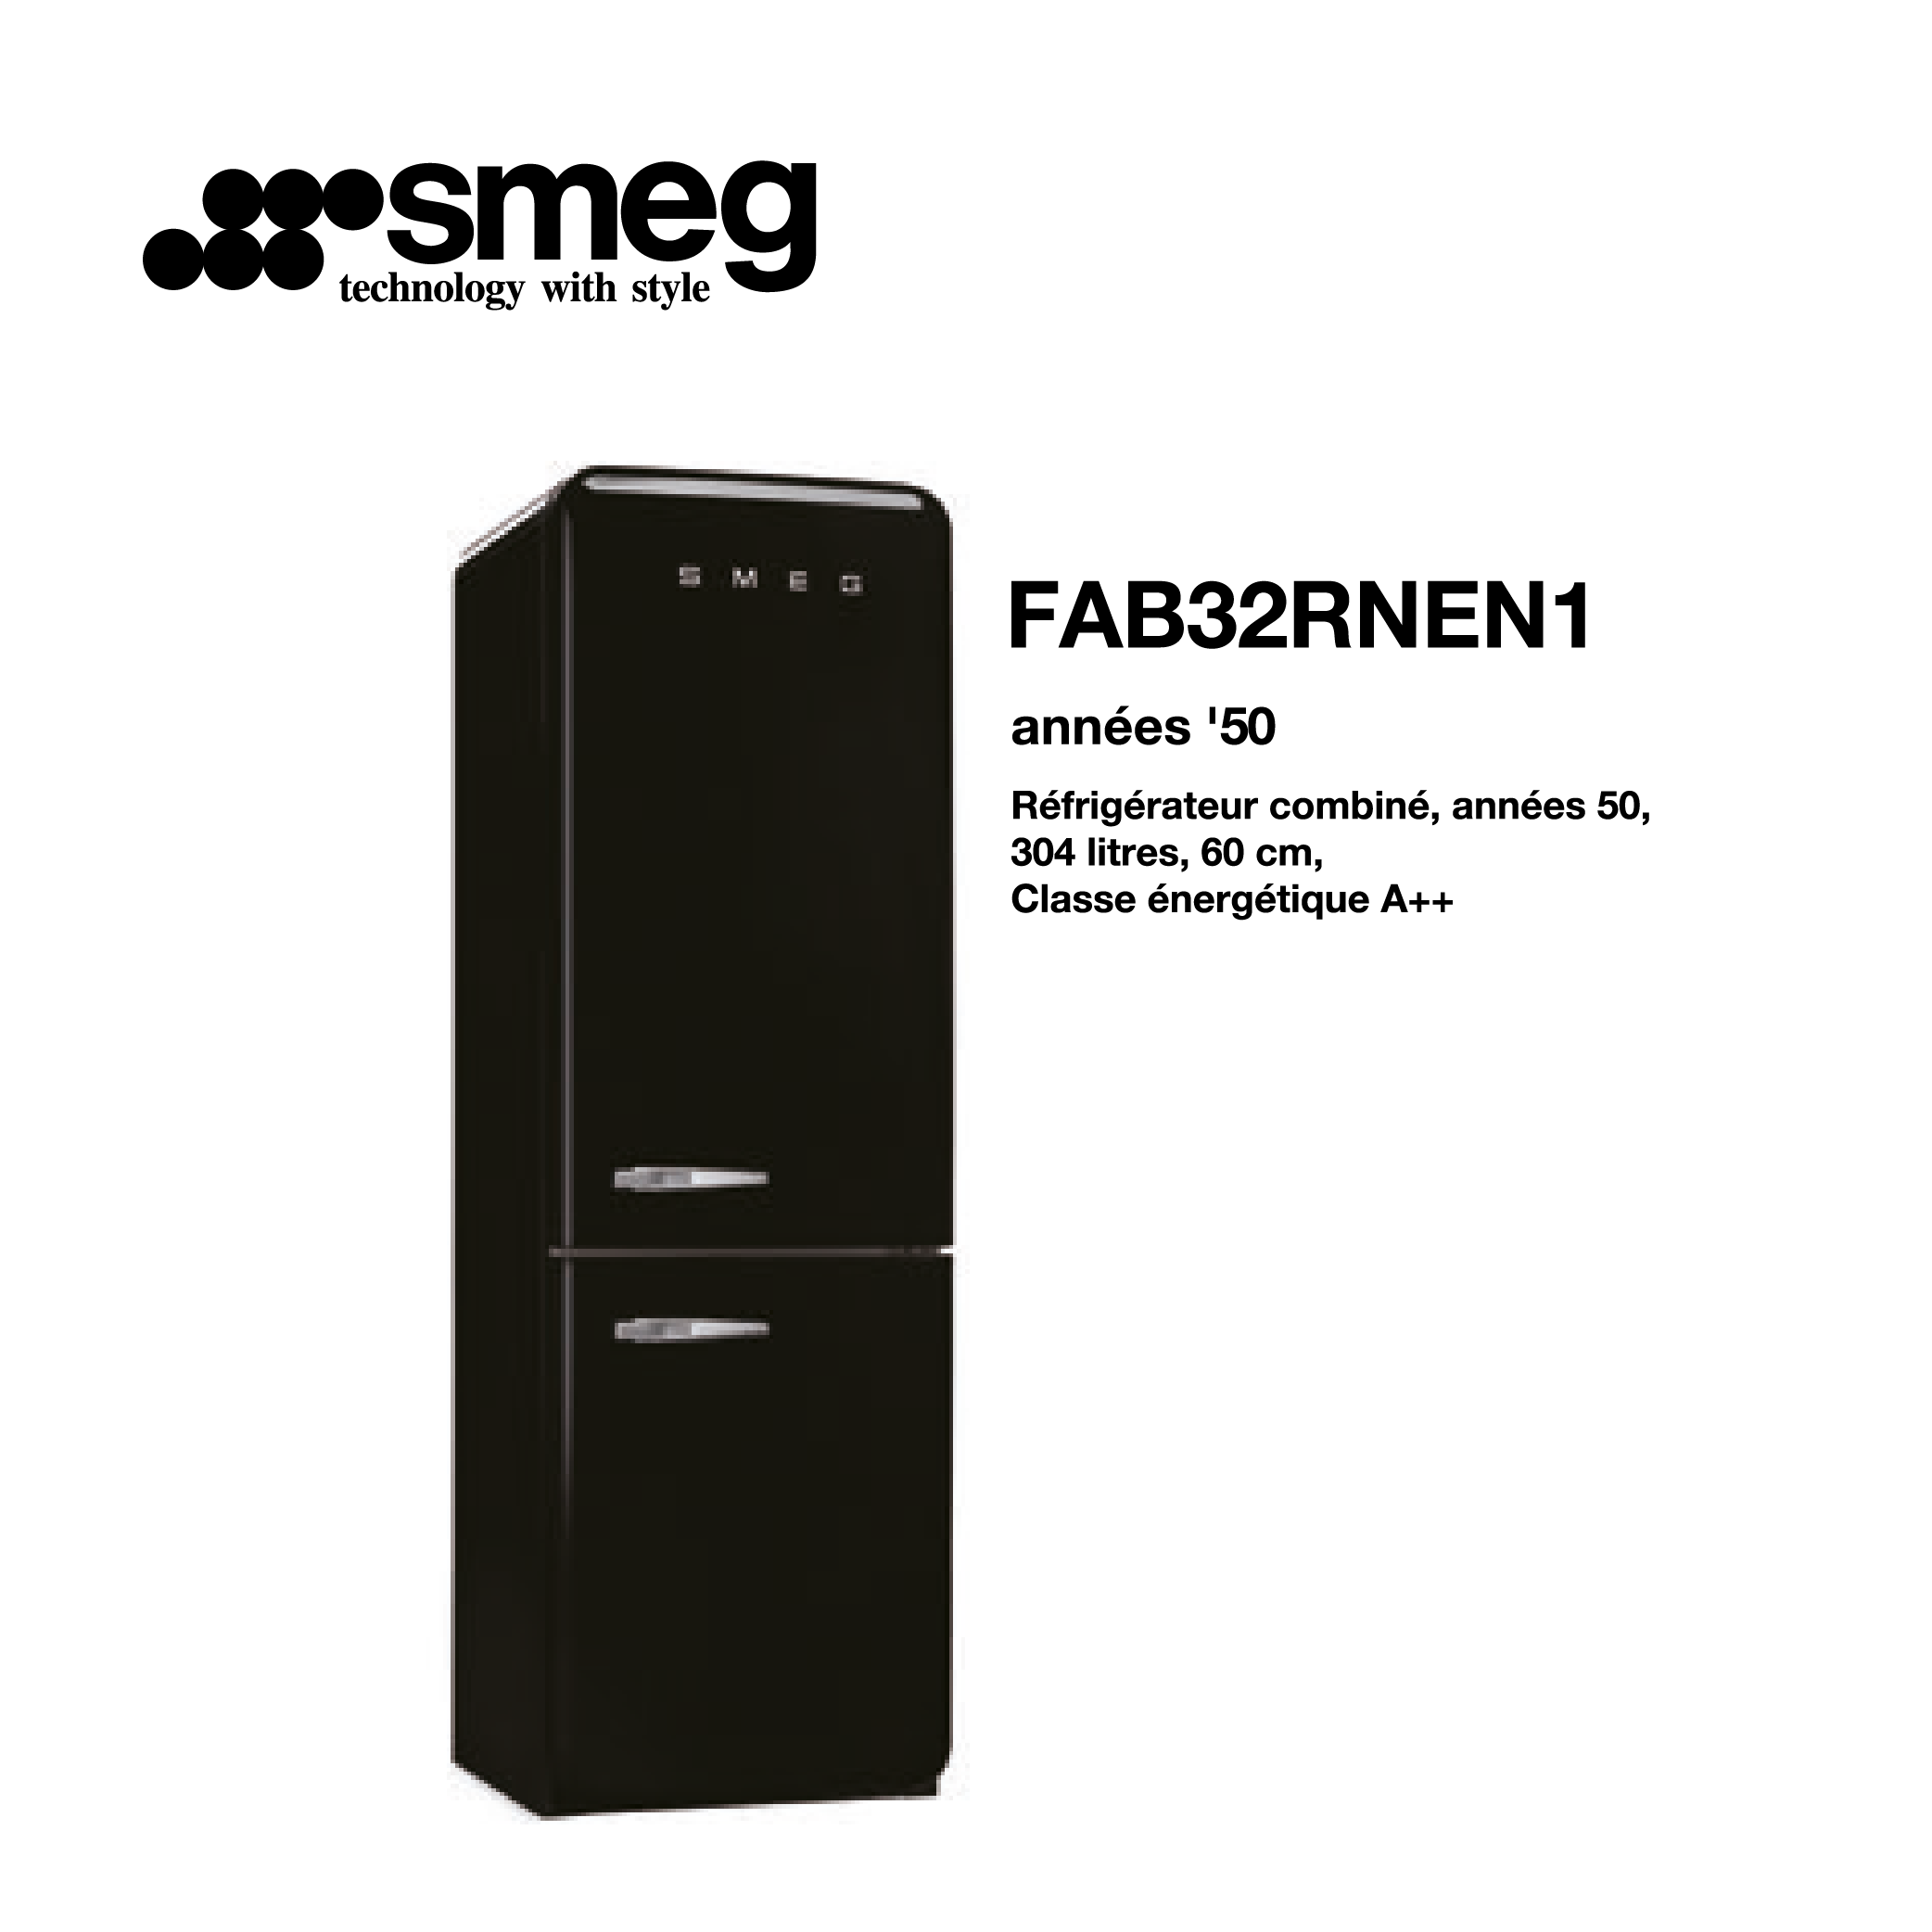 Réfrigérateur combiné smeg 304 litre – 60cm couleur Noir FAB32RNEN1